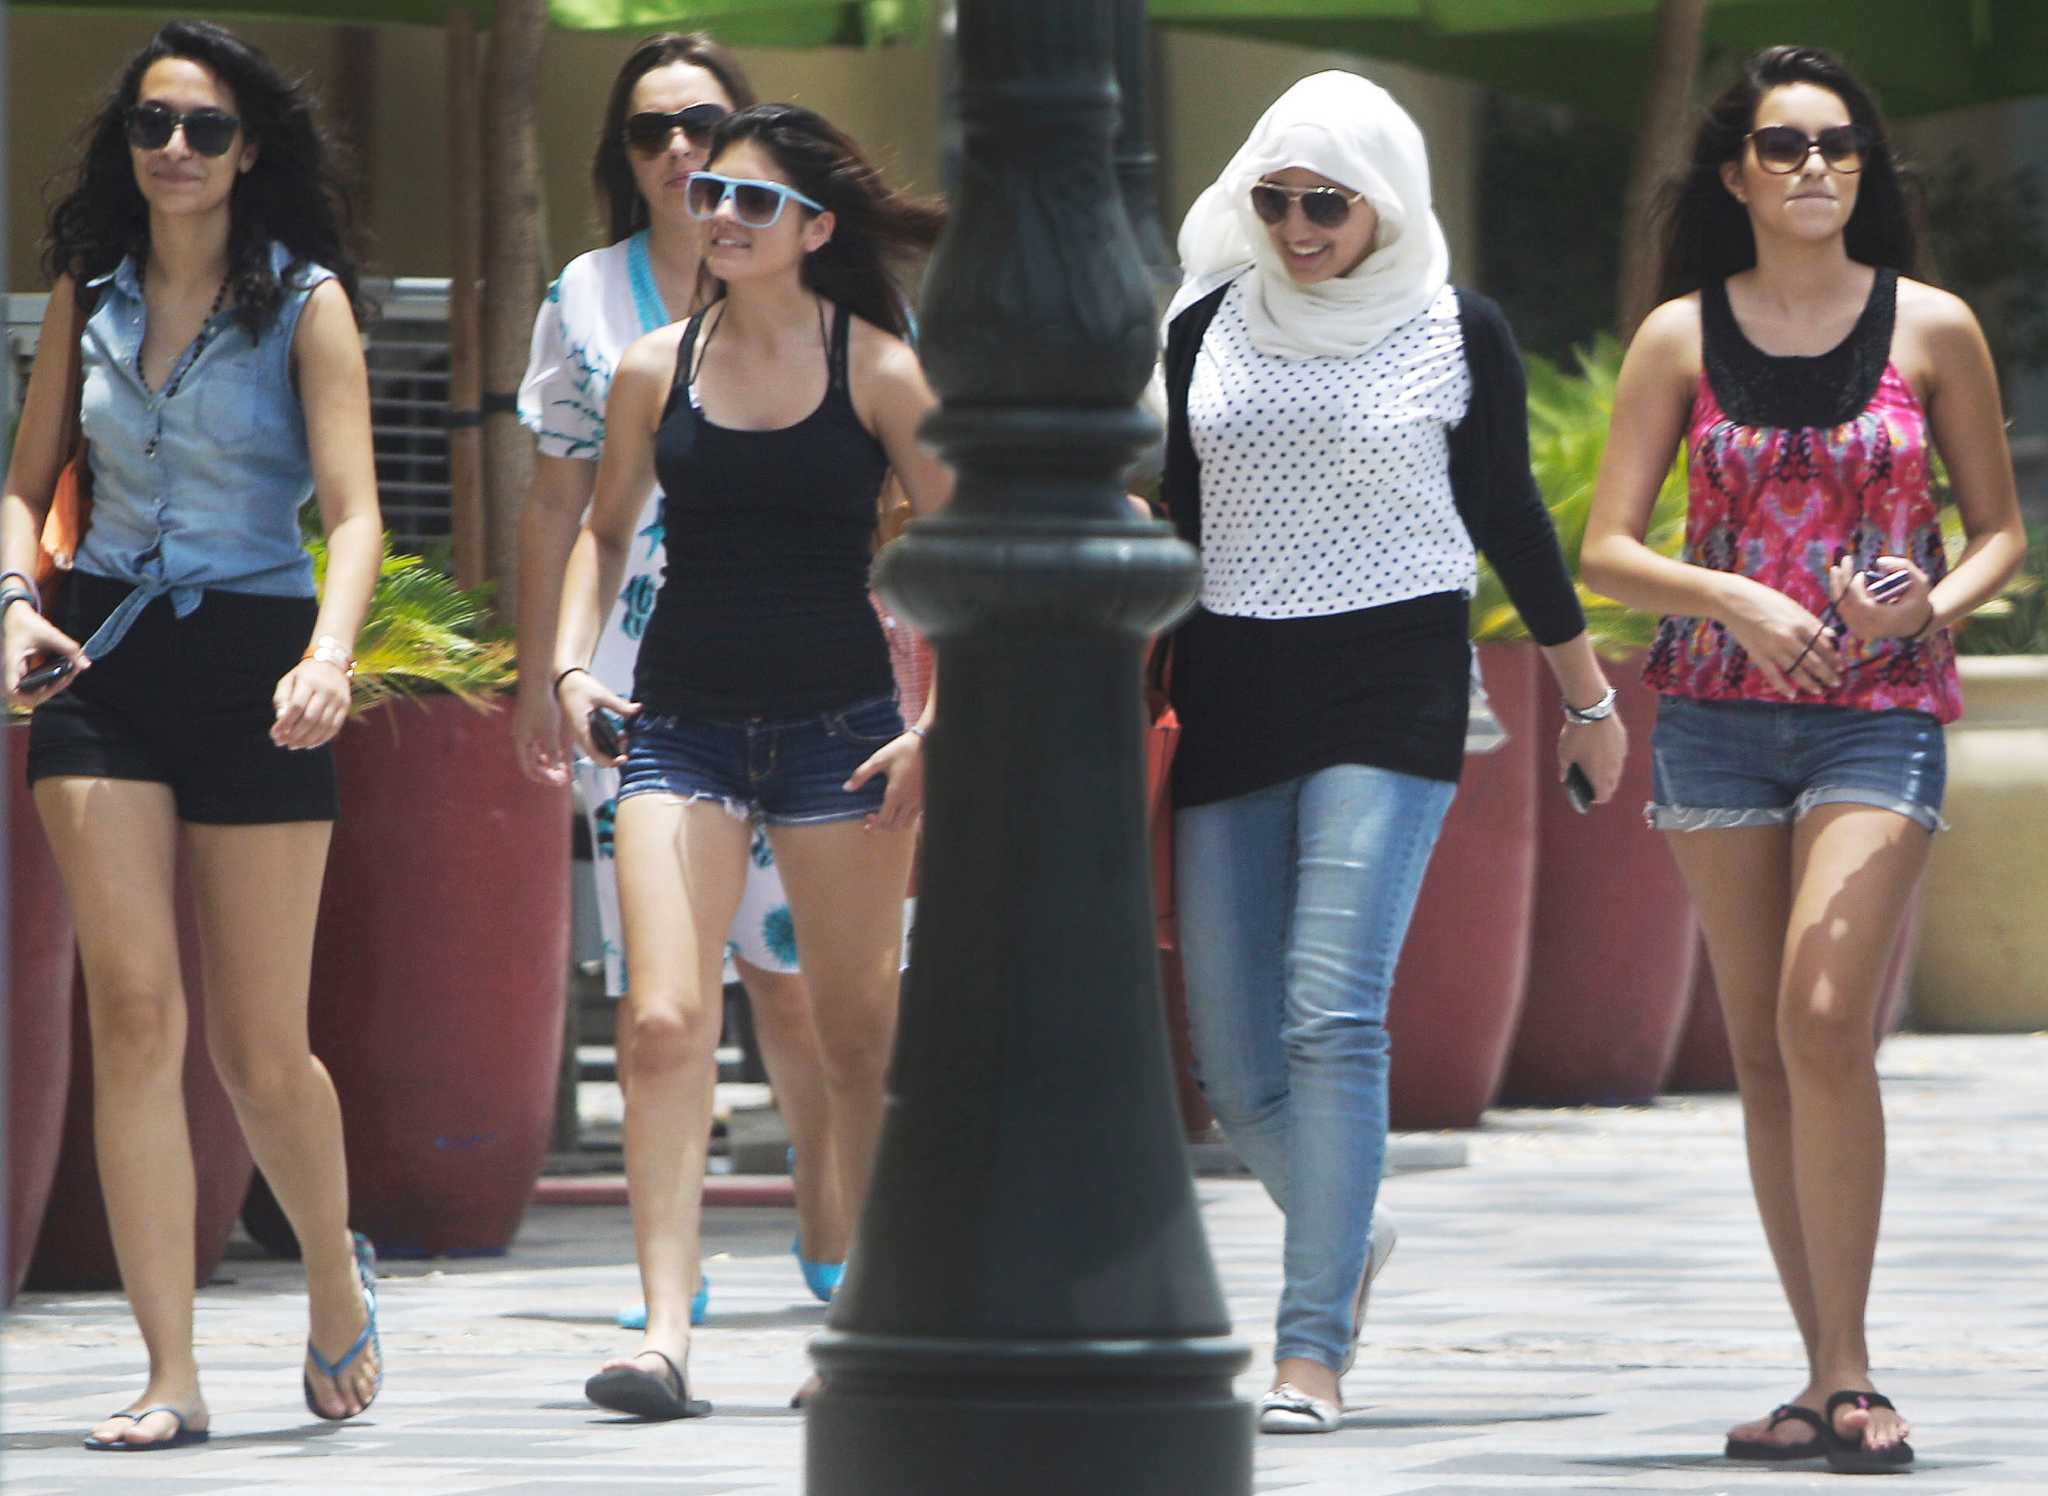 Дубай можно ли в шортах. Турчанки на улице. Турецкие девушки. Турция женщины на улице. Турецкие девушки на улице.